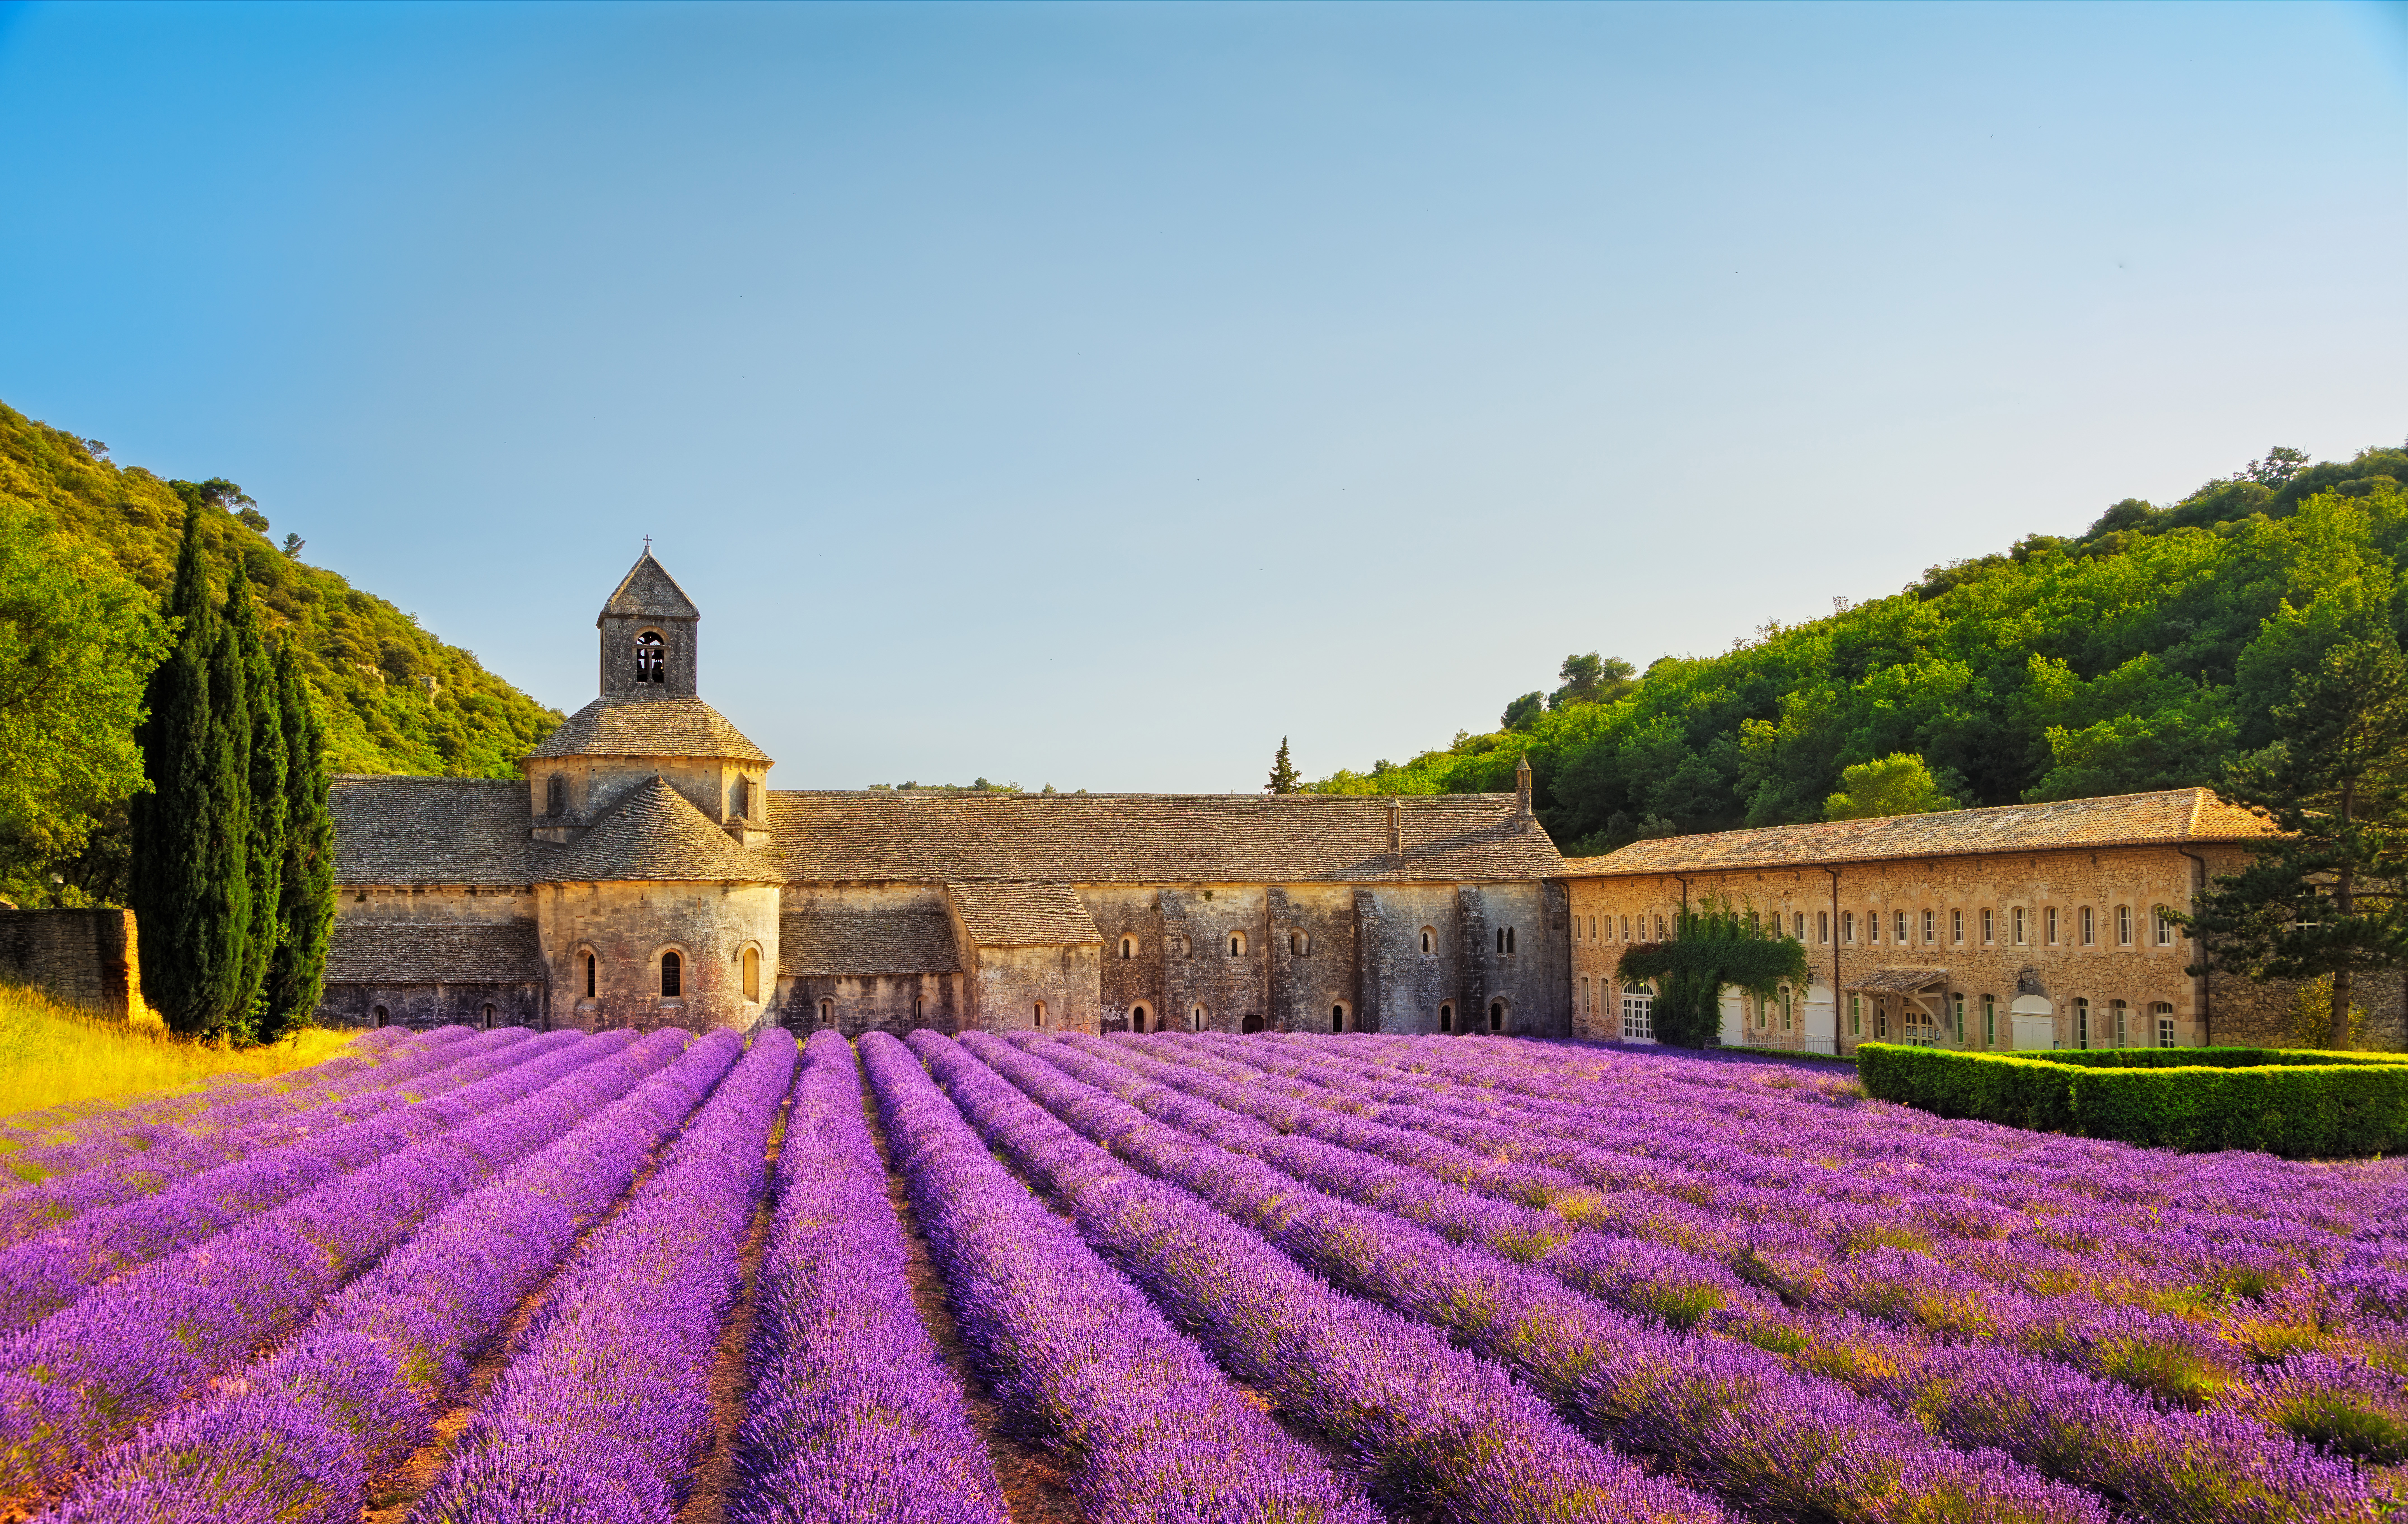 Lavendelfelder in der Provence vor einer Abtei, links und rechts sind grüne Hügel